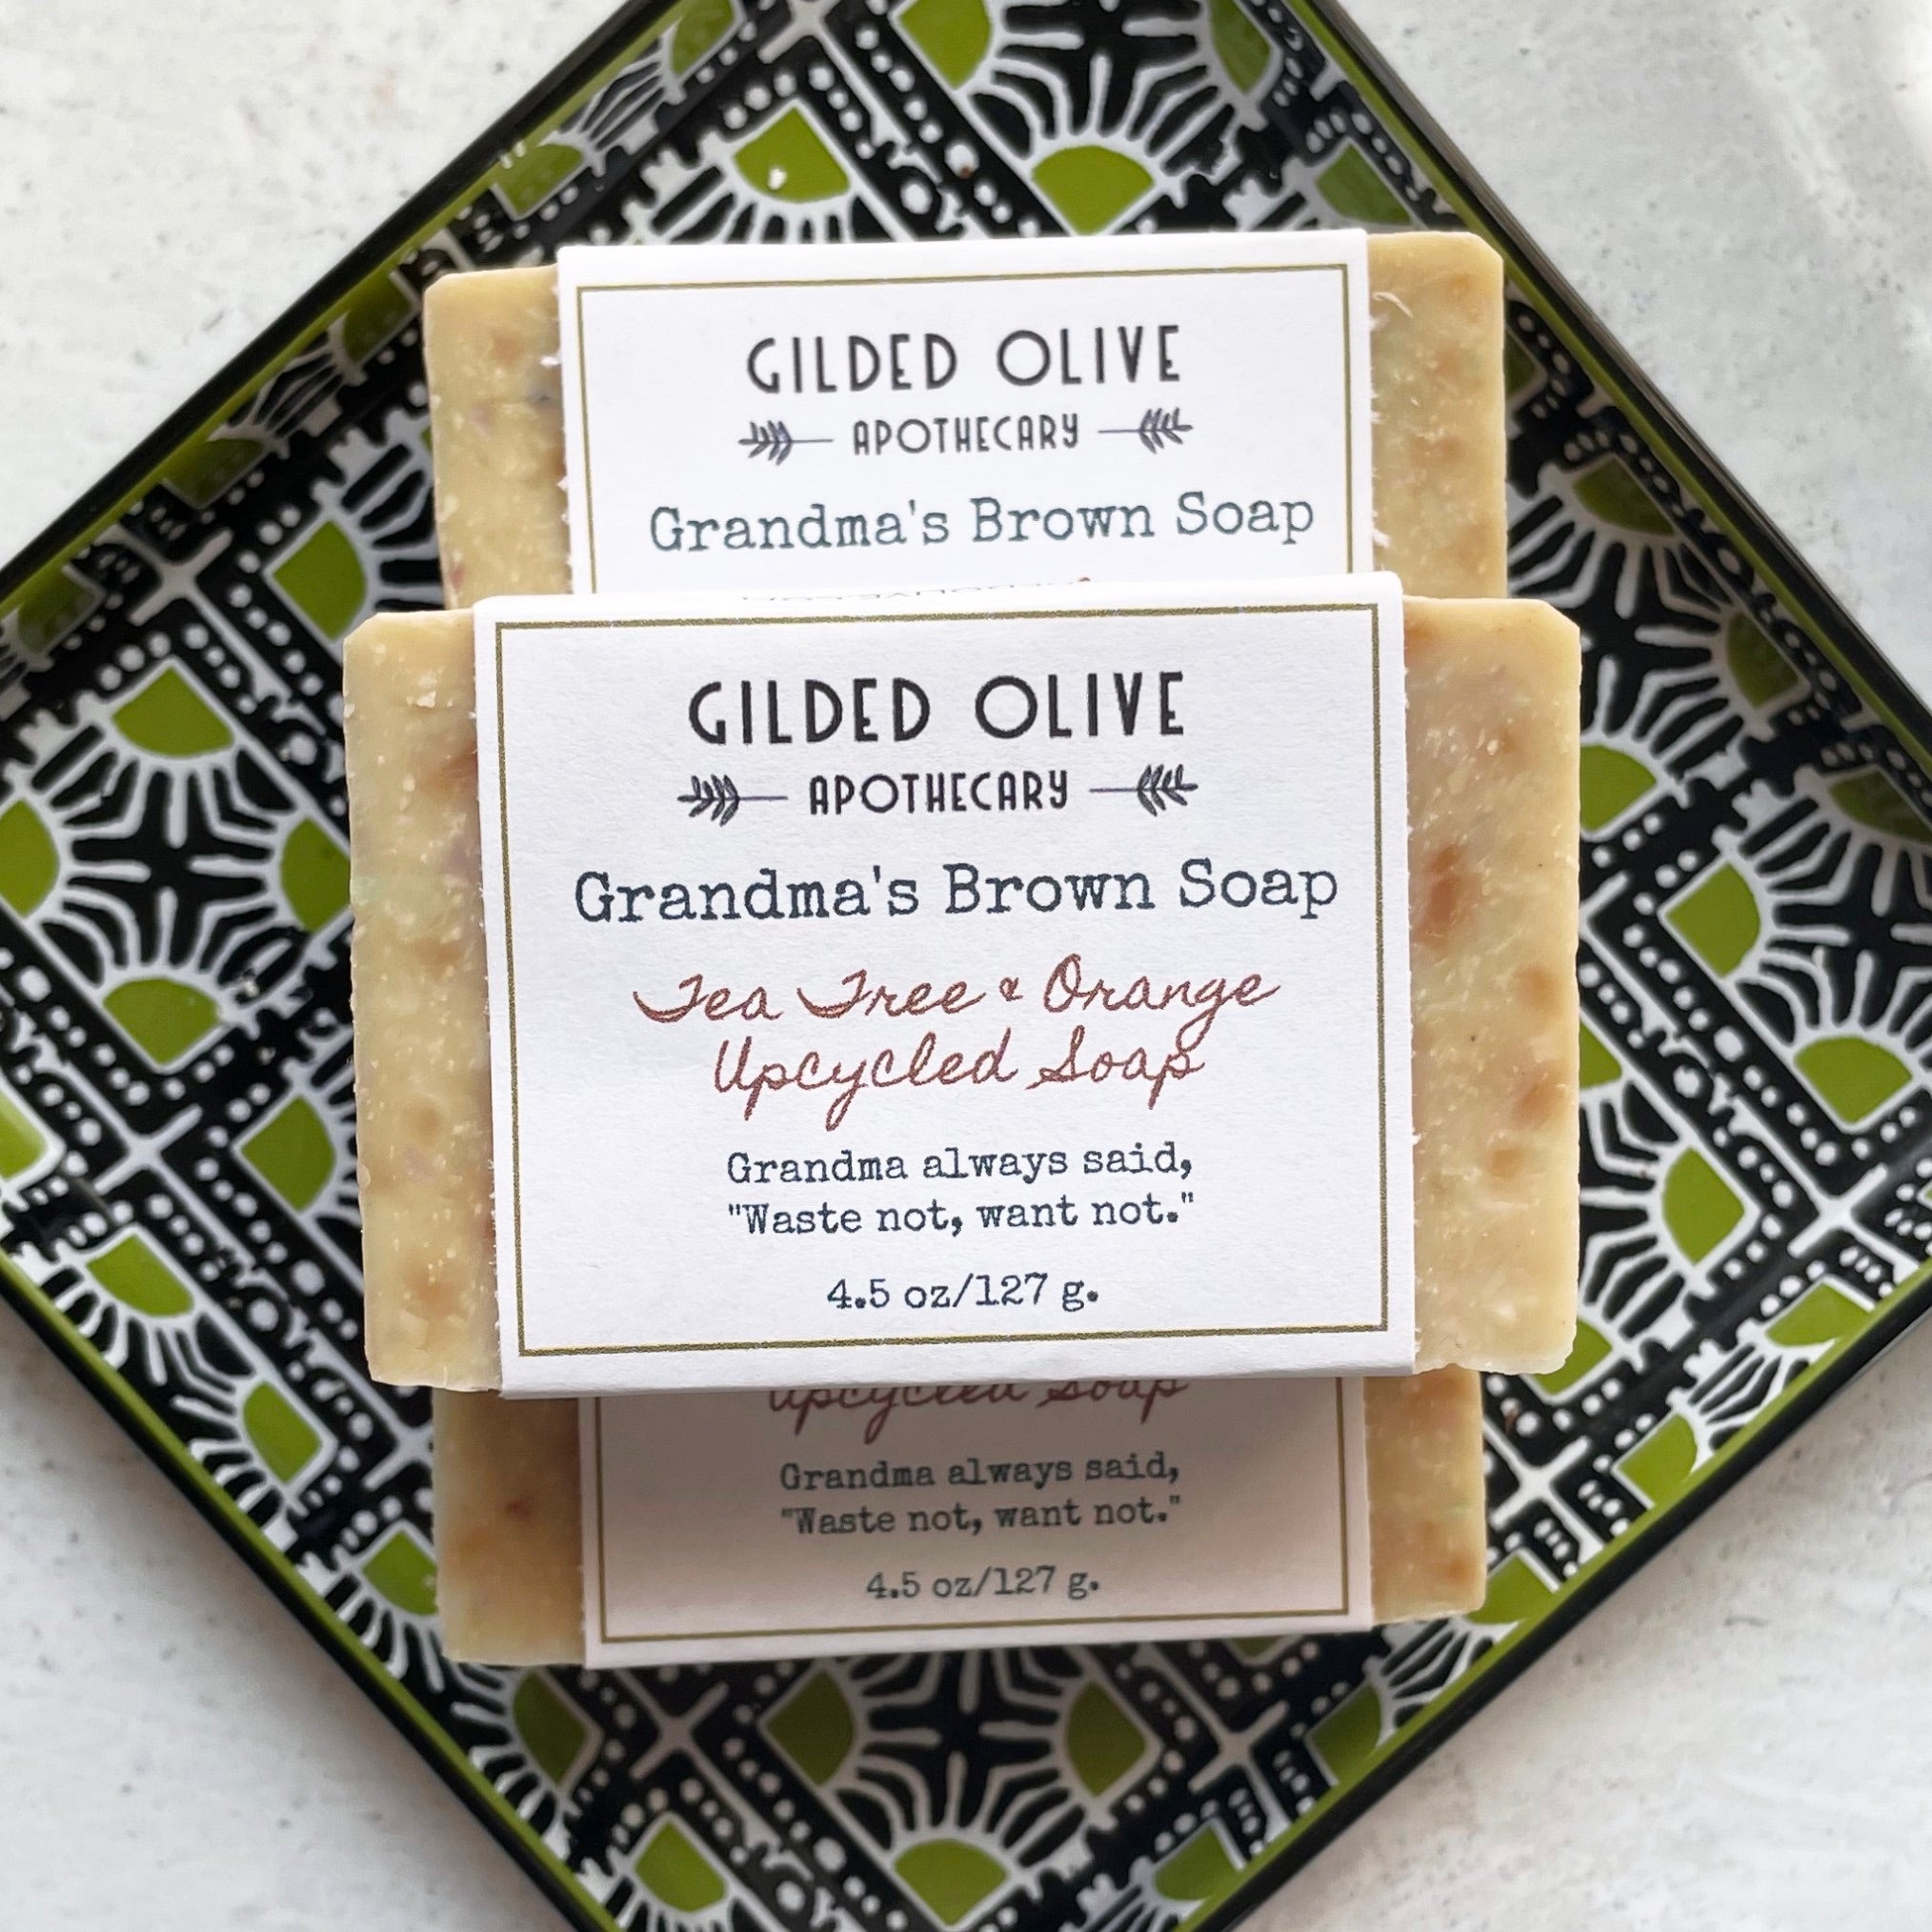 100% Olive Oil Soap: My Favourite Zero Waste Facial Soap Recipe